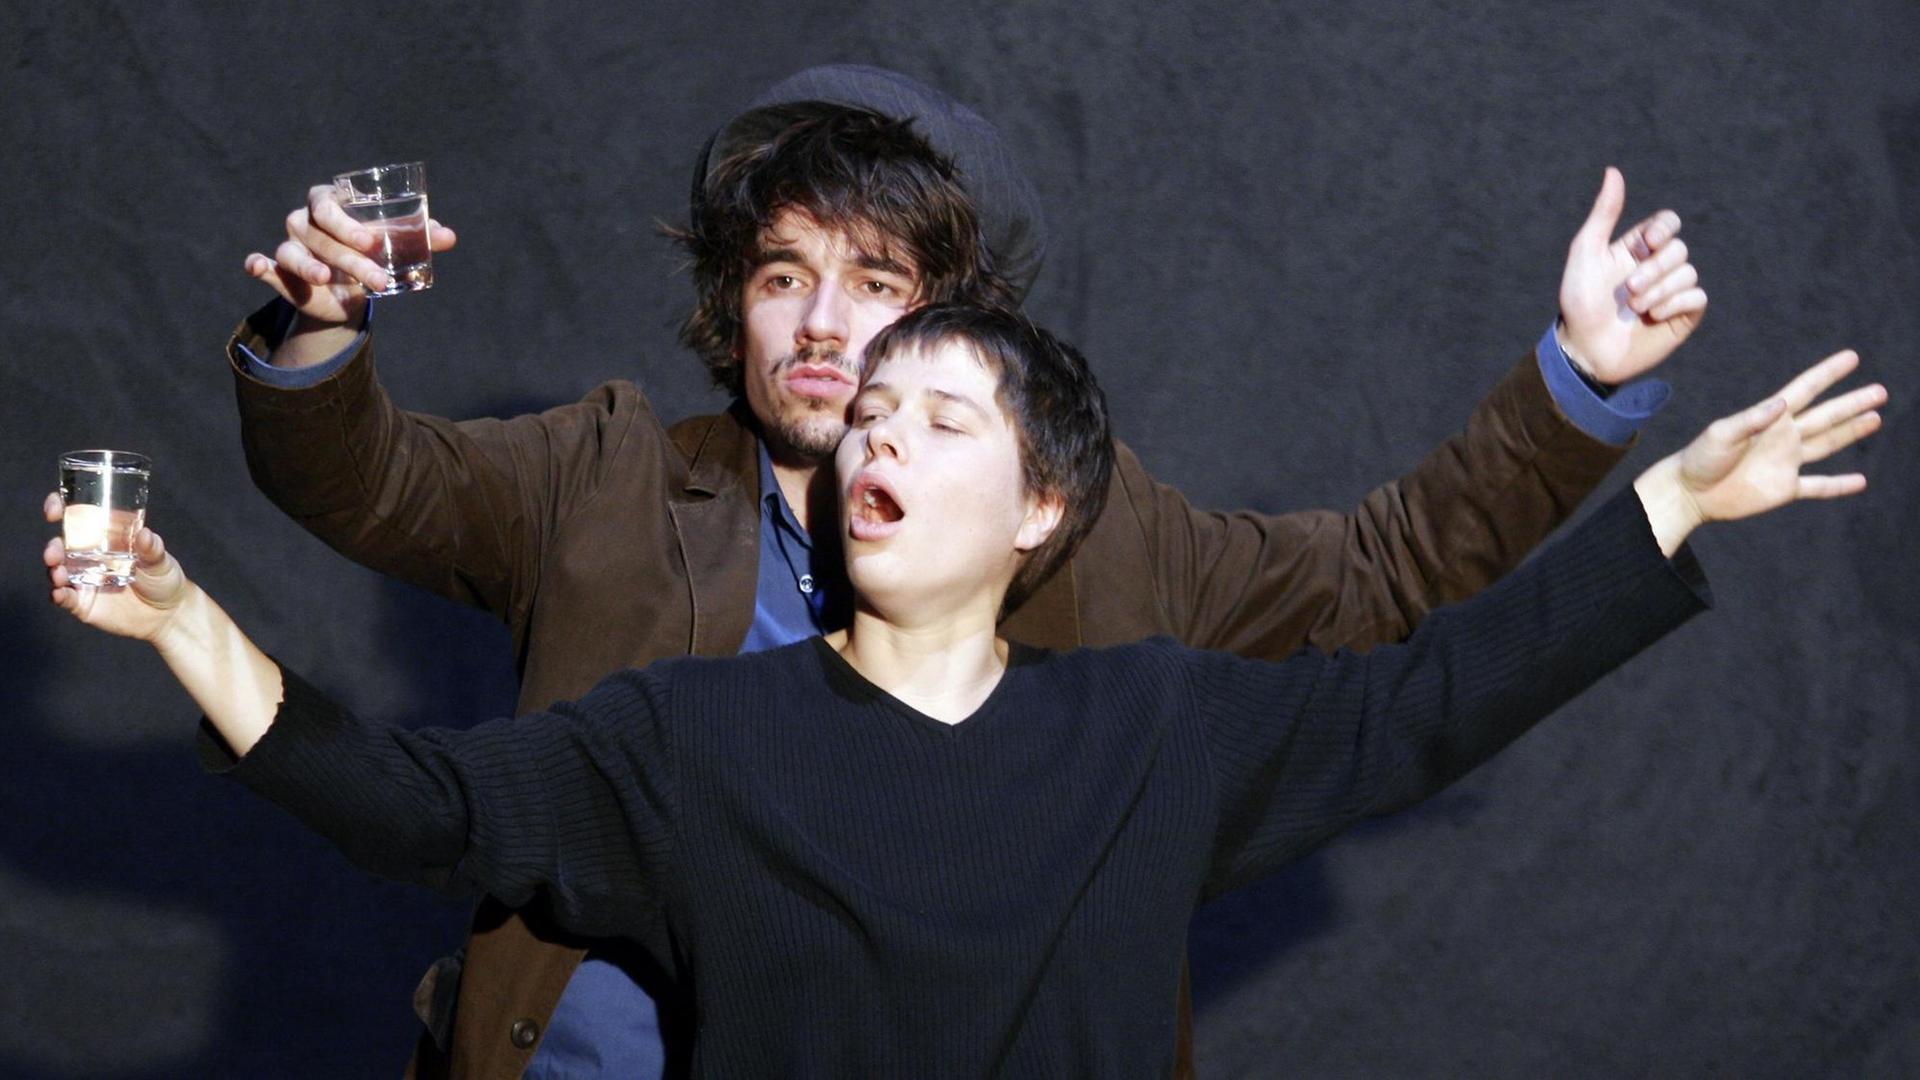 Alexander Khuon und Meike Droste als Boris und Mascha in dem Theaterstück "Die Möwe" am Deutschen Theater Berlin (2008)